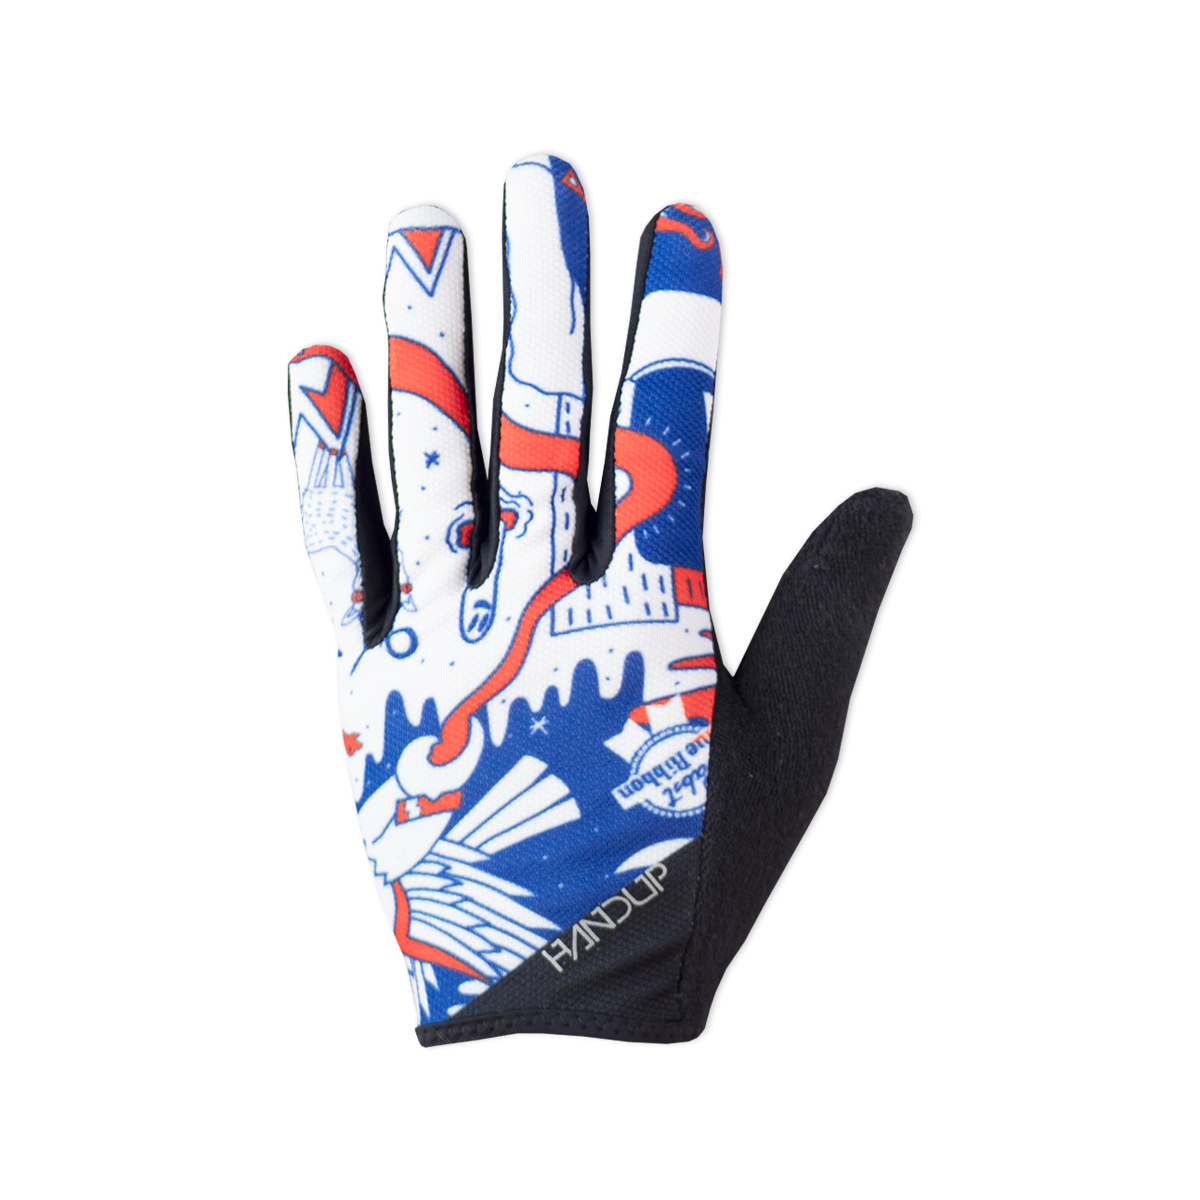 Gloves - Pabst Blue Ribbon Laser Eagle